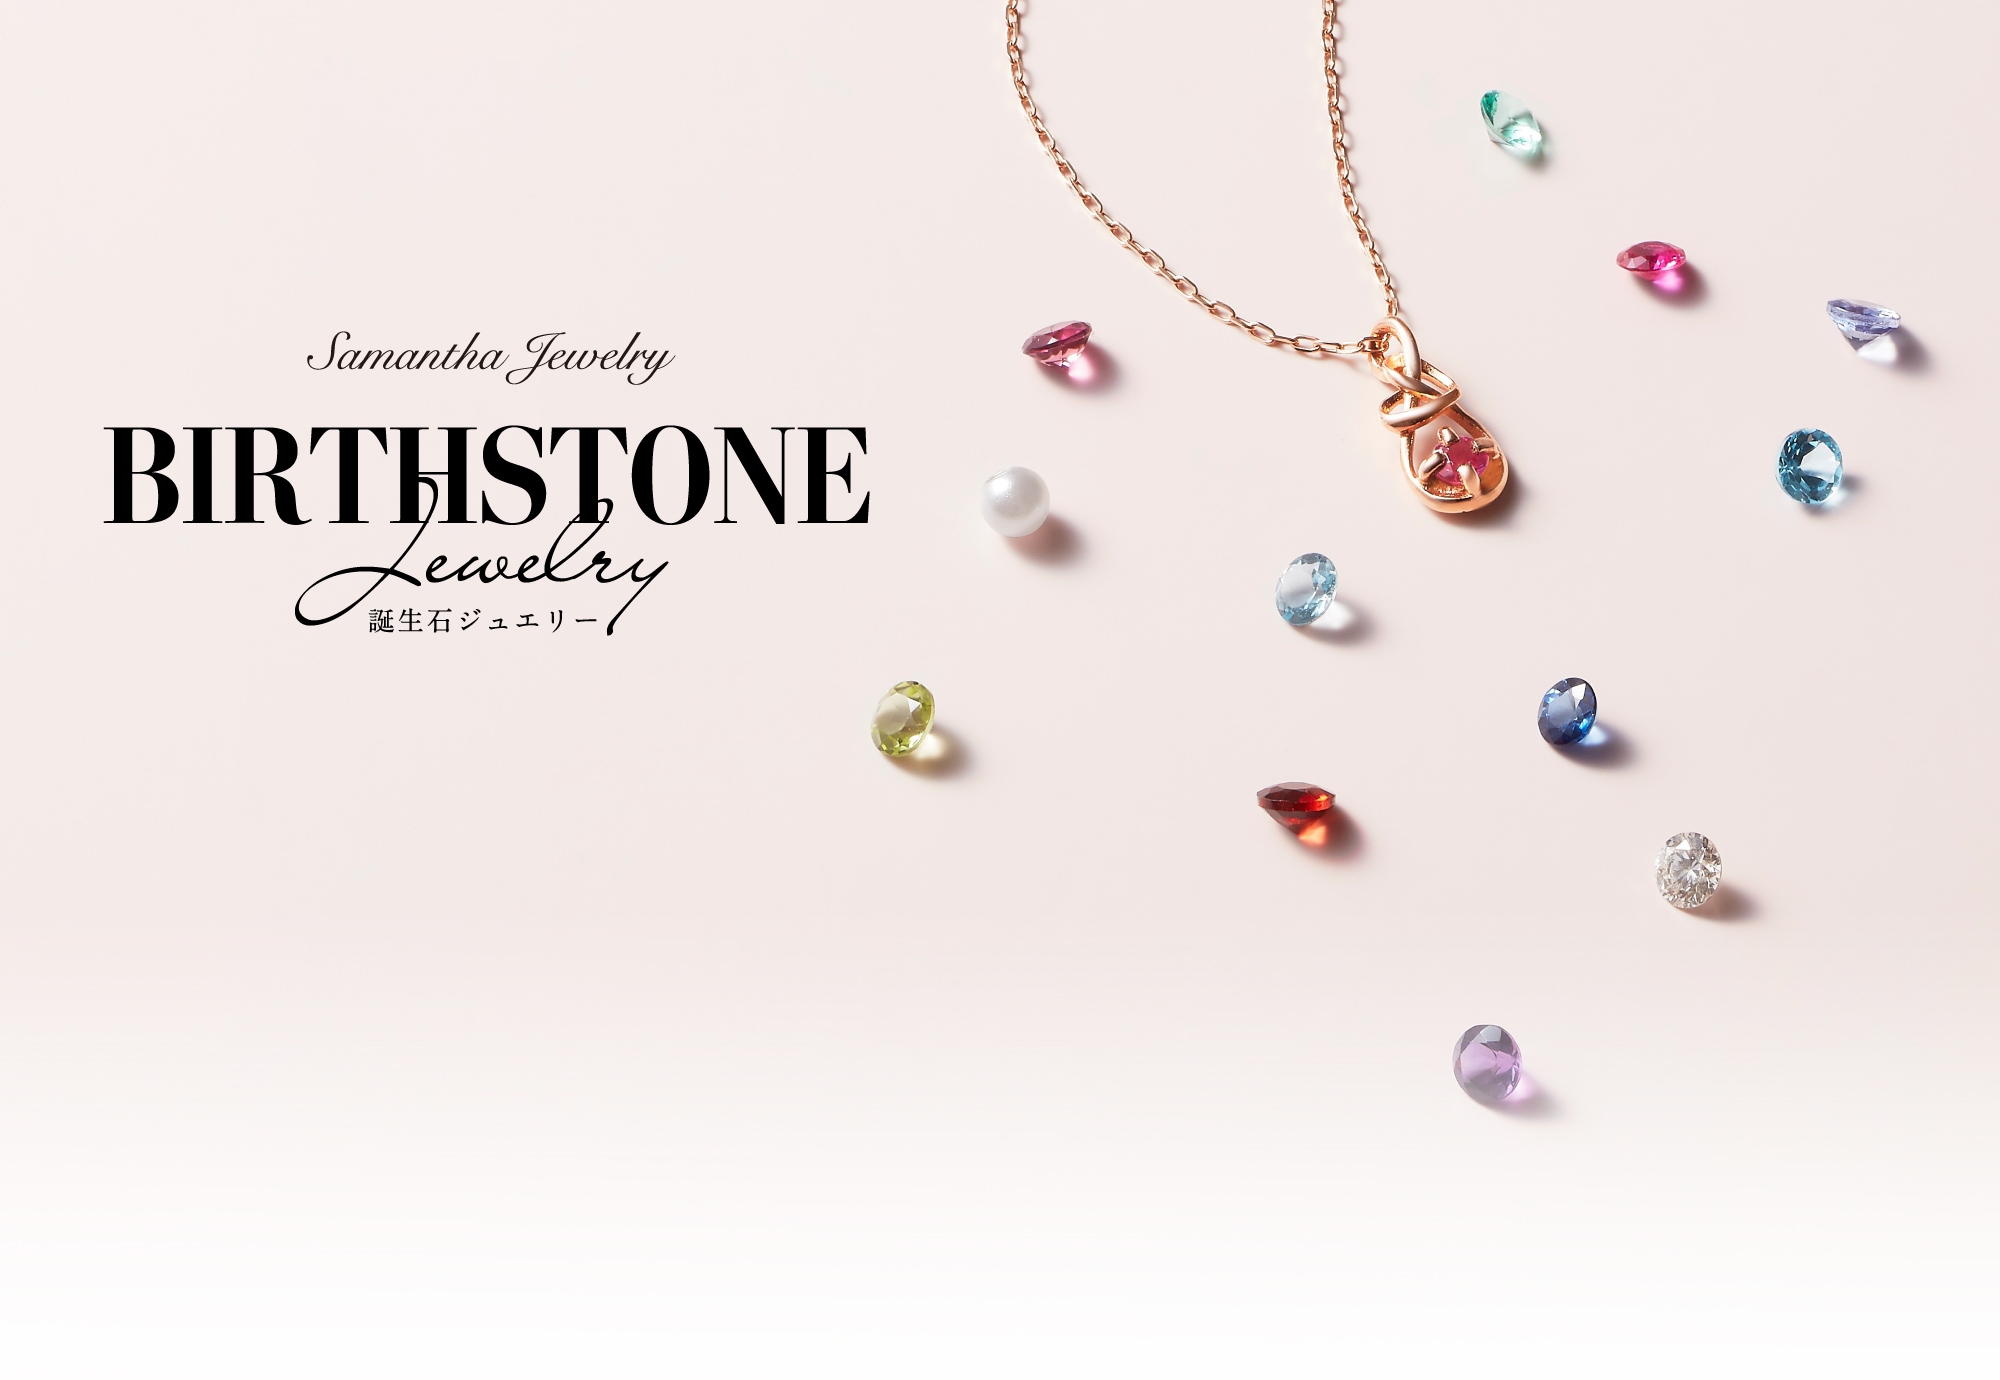  ジェムストーン Samantha Tiara Birthday Stone Jewelry │ サマンサティアラ 誕生石 